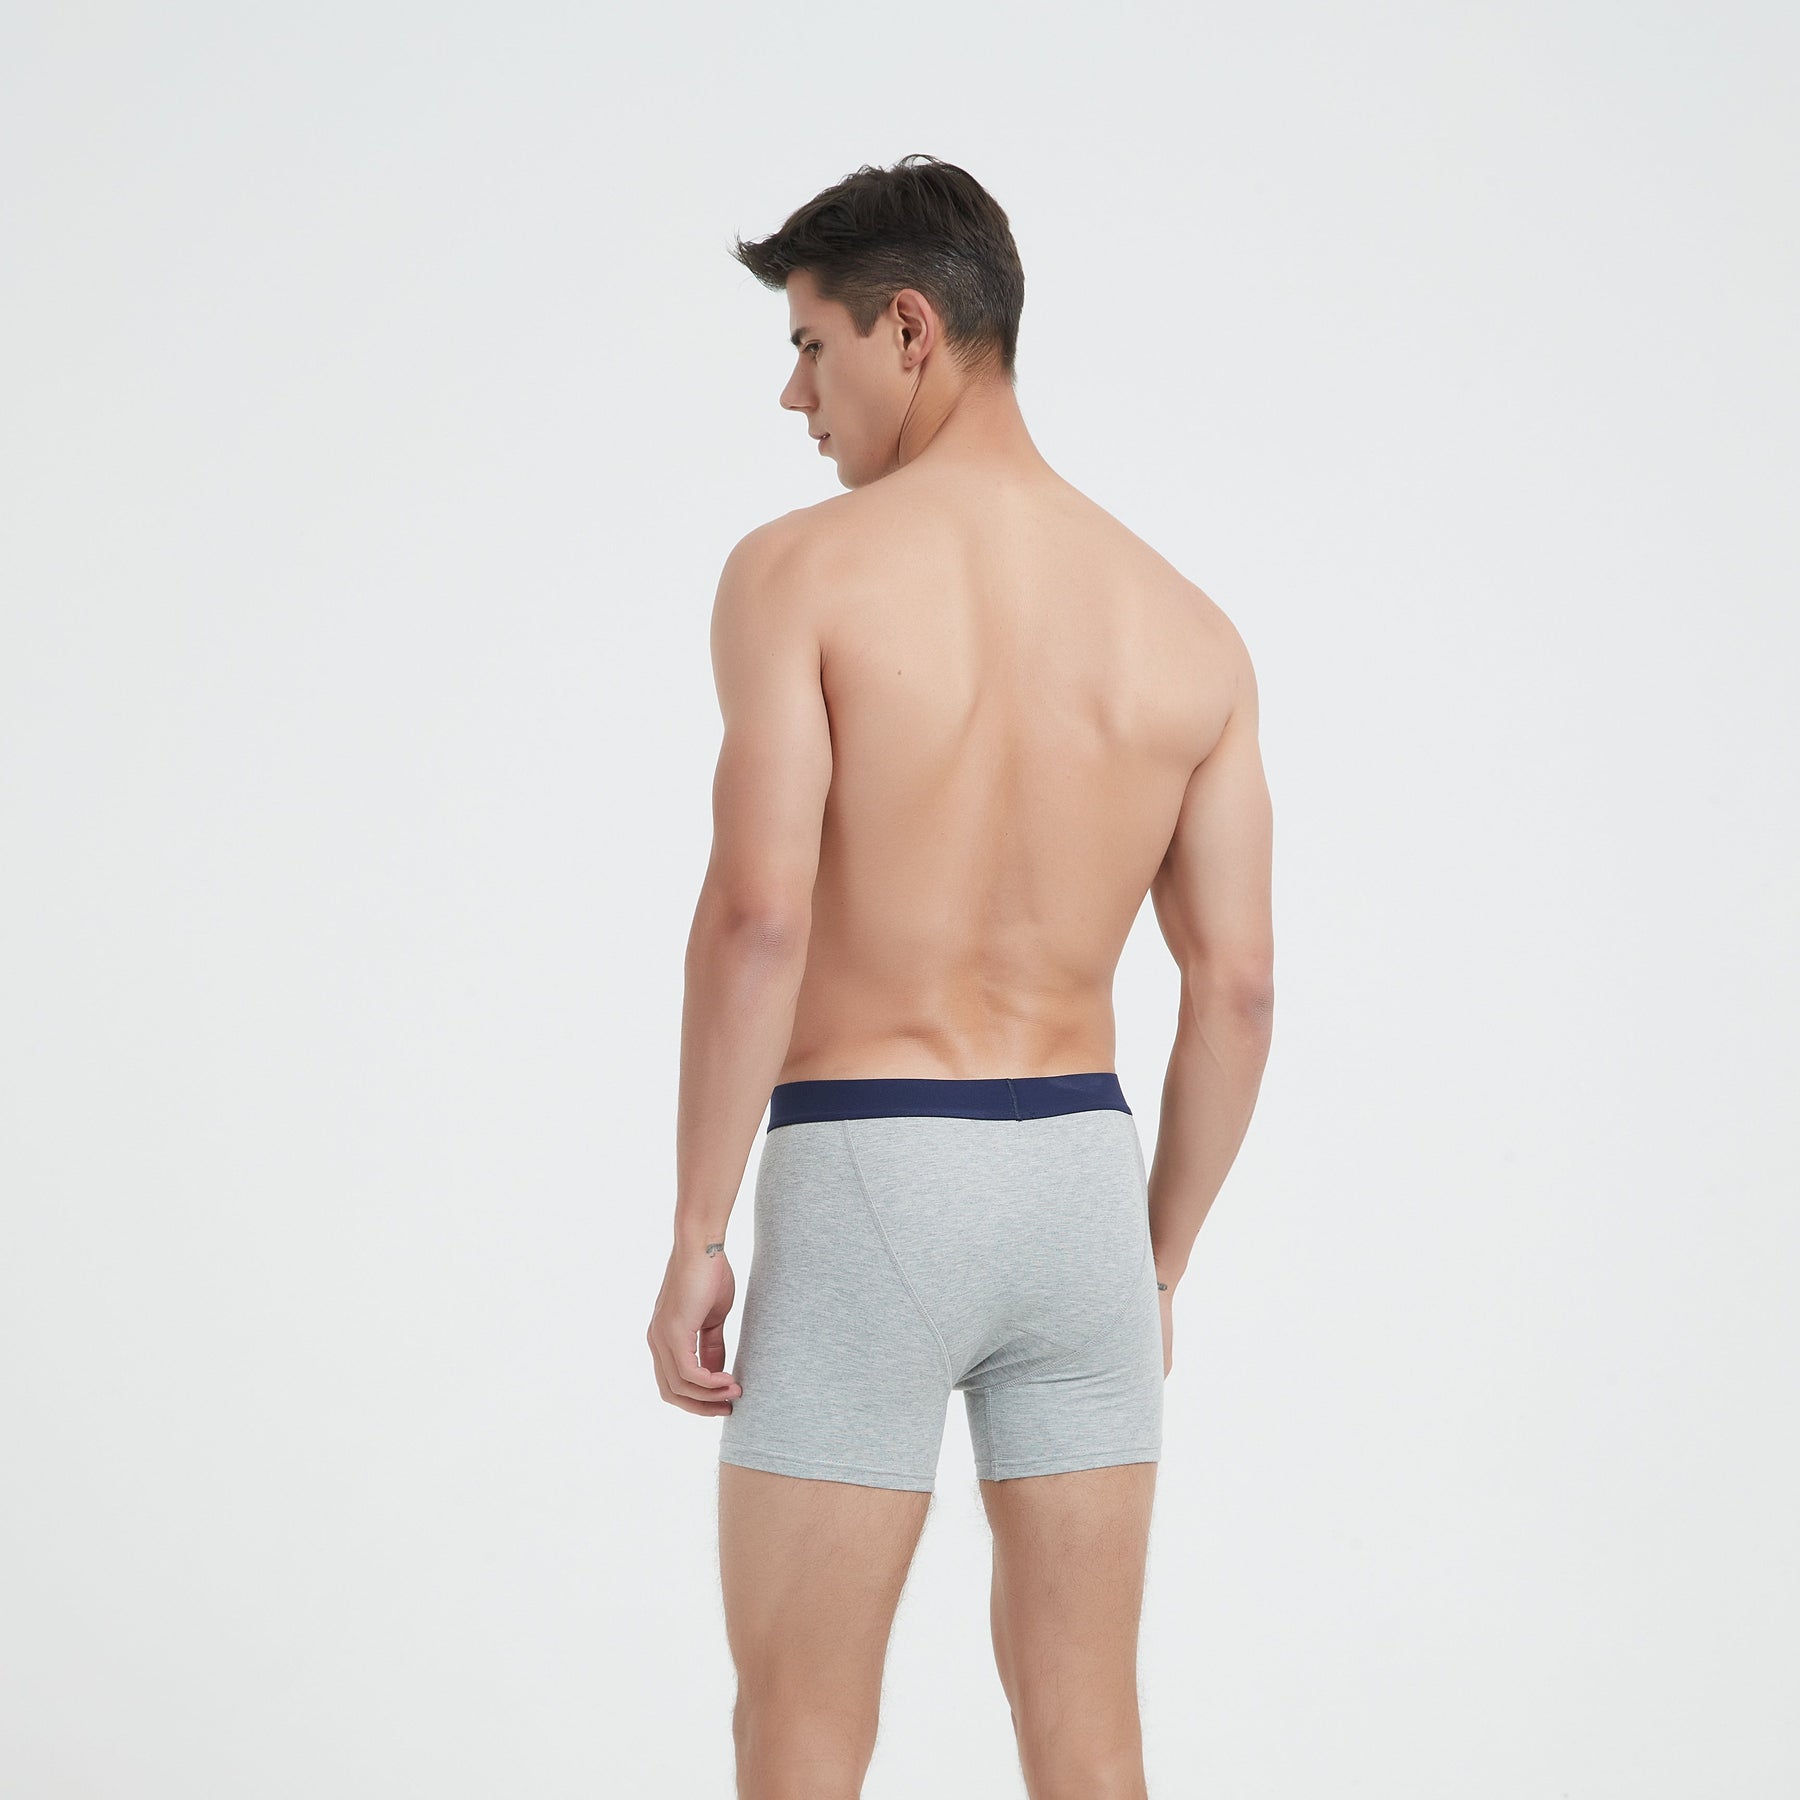 Back side view of EMF shielding underwear boxer brief in heather grey